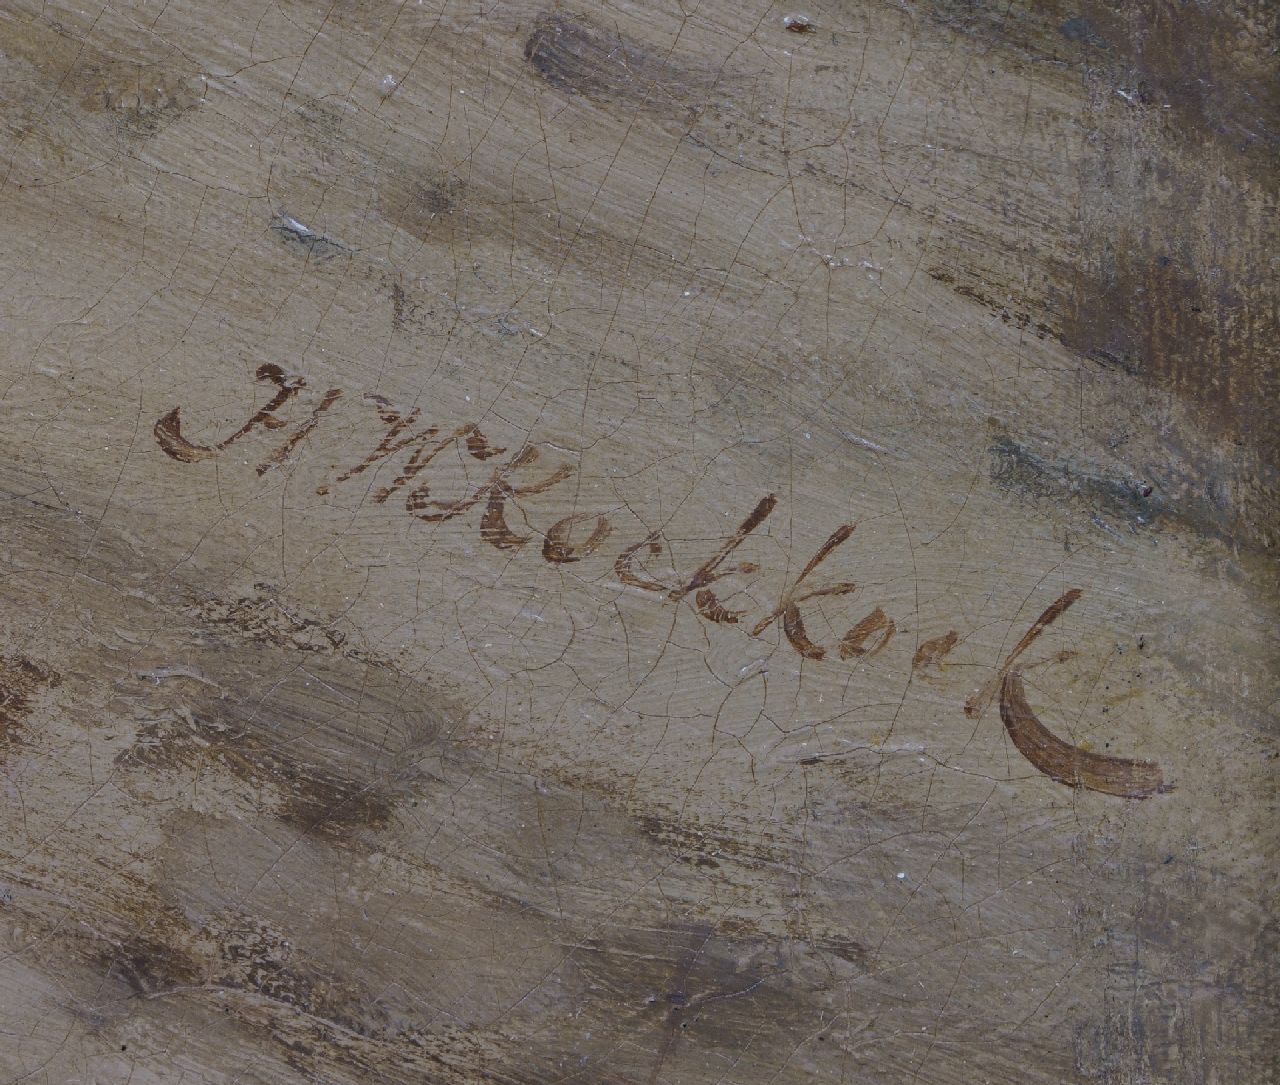 Hermanus Willem Koekkoek signaturen Pruisische cavaleristen te paard